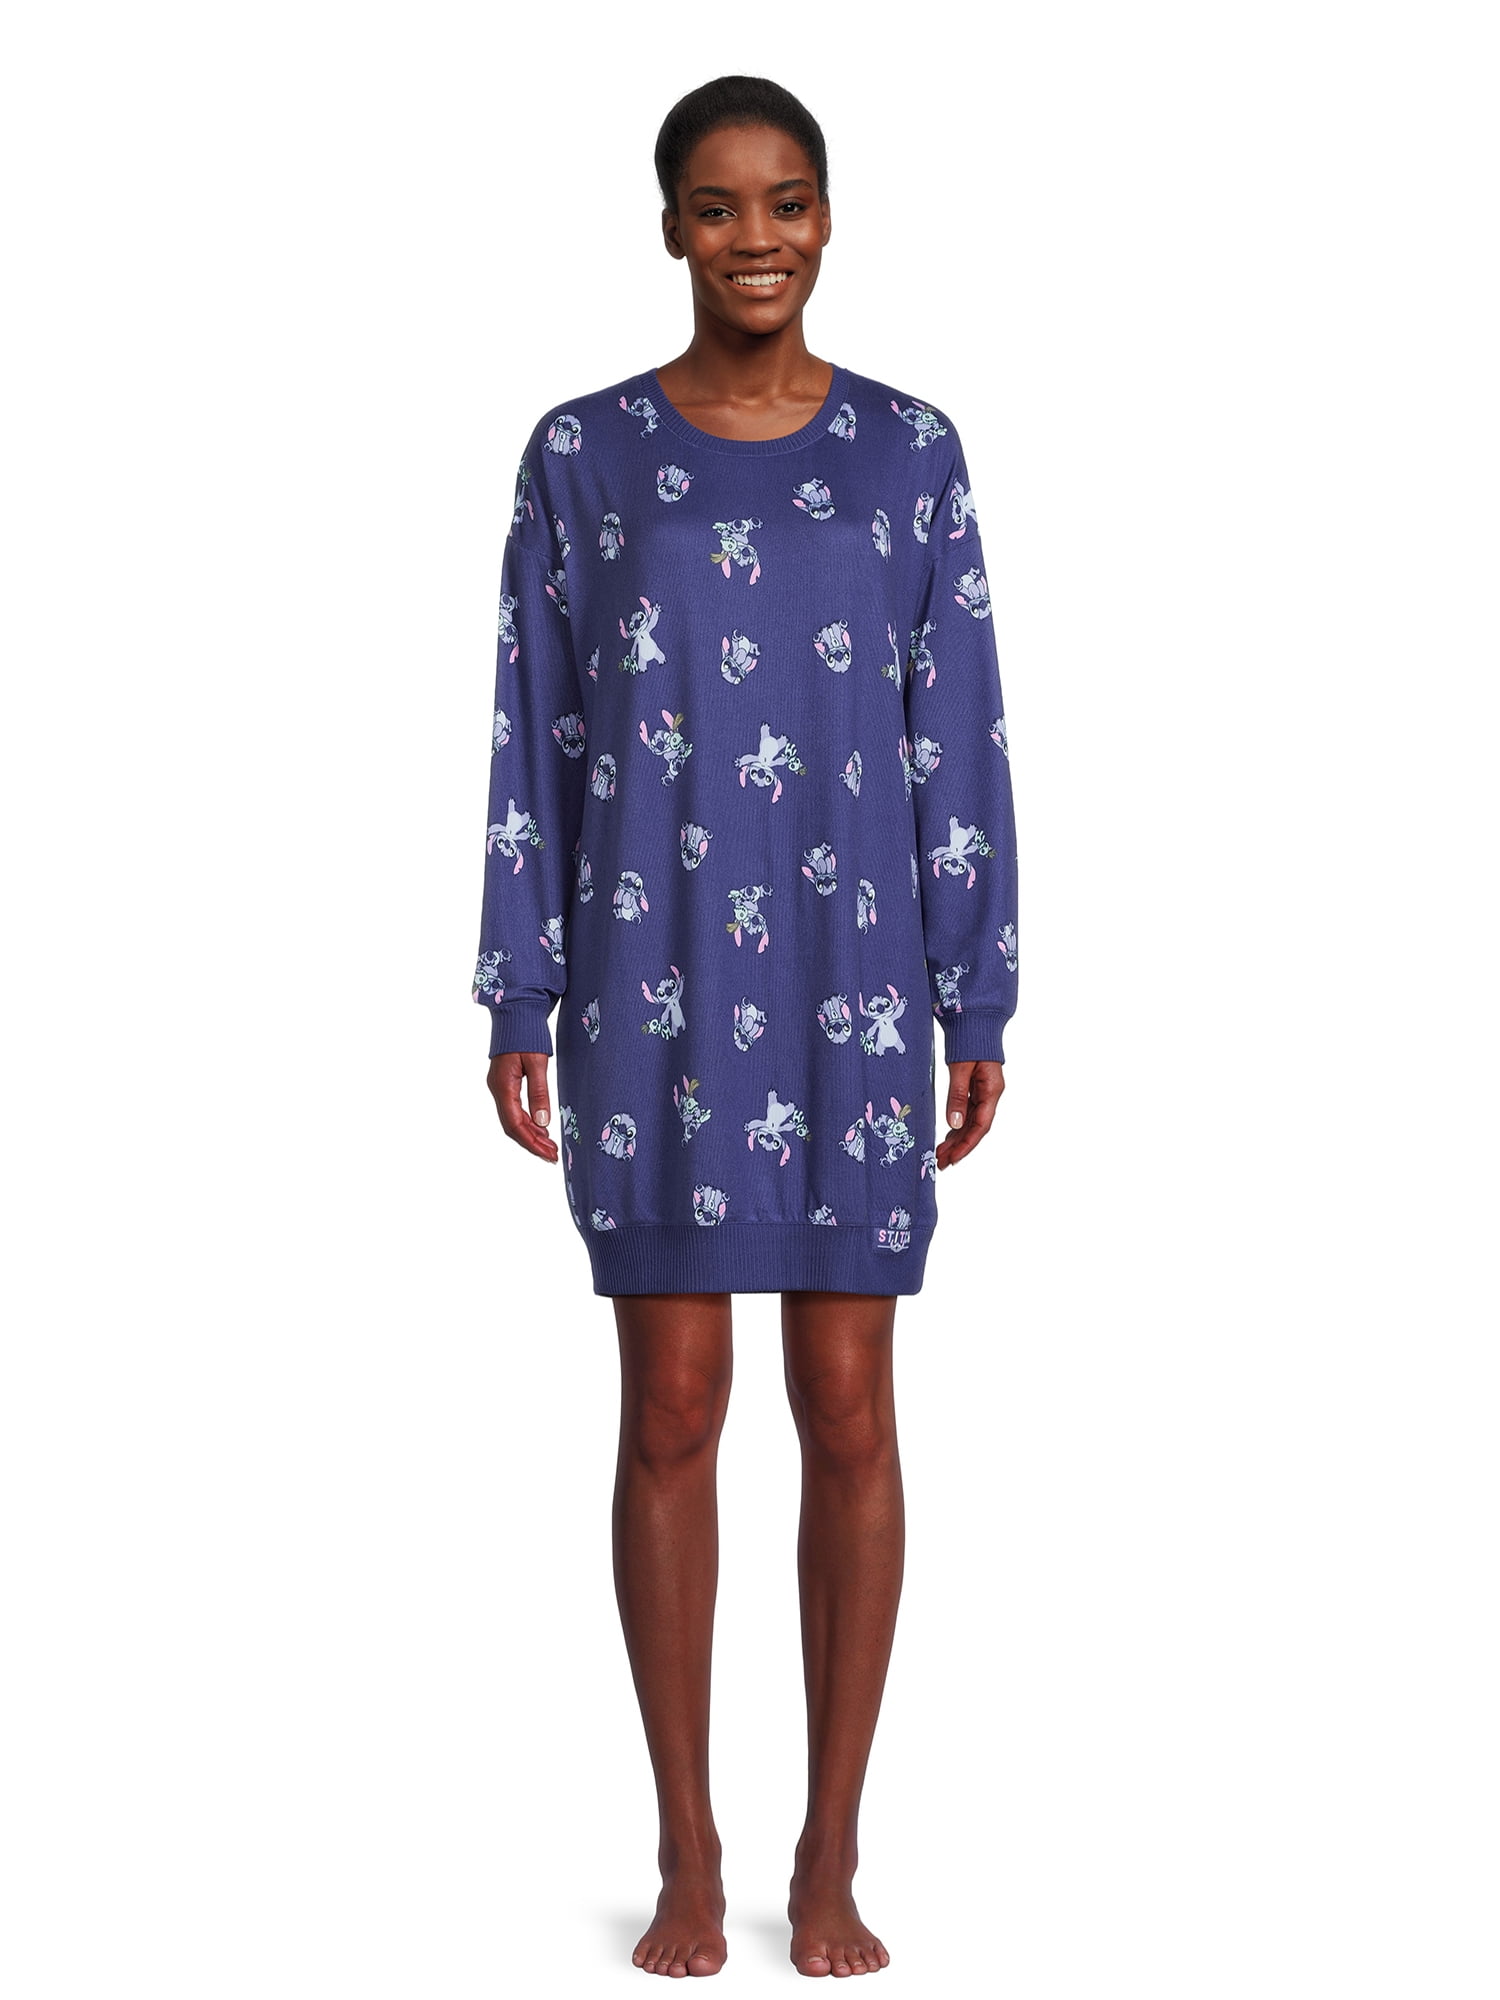 Disney Stitch Women's Sleep Shirt, Sizes XS-3X 